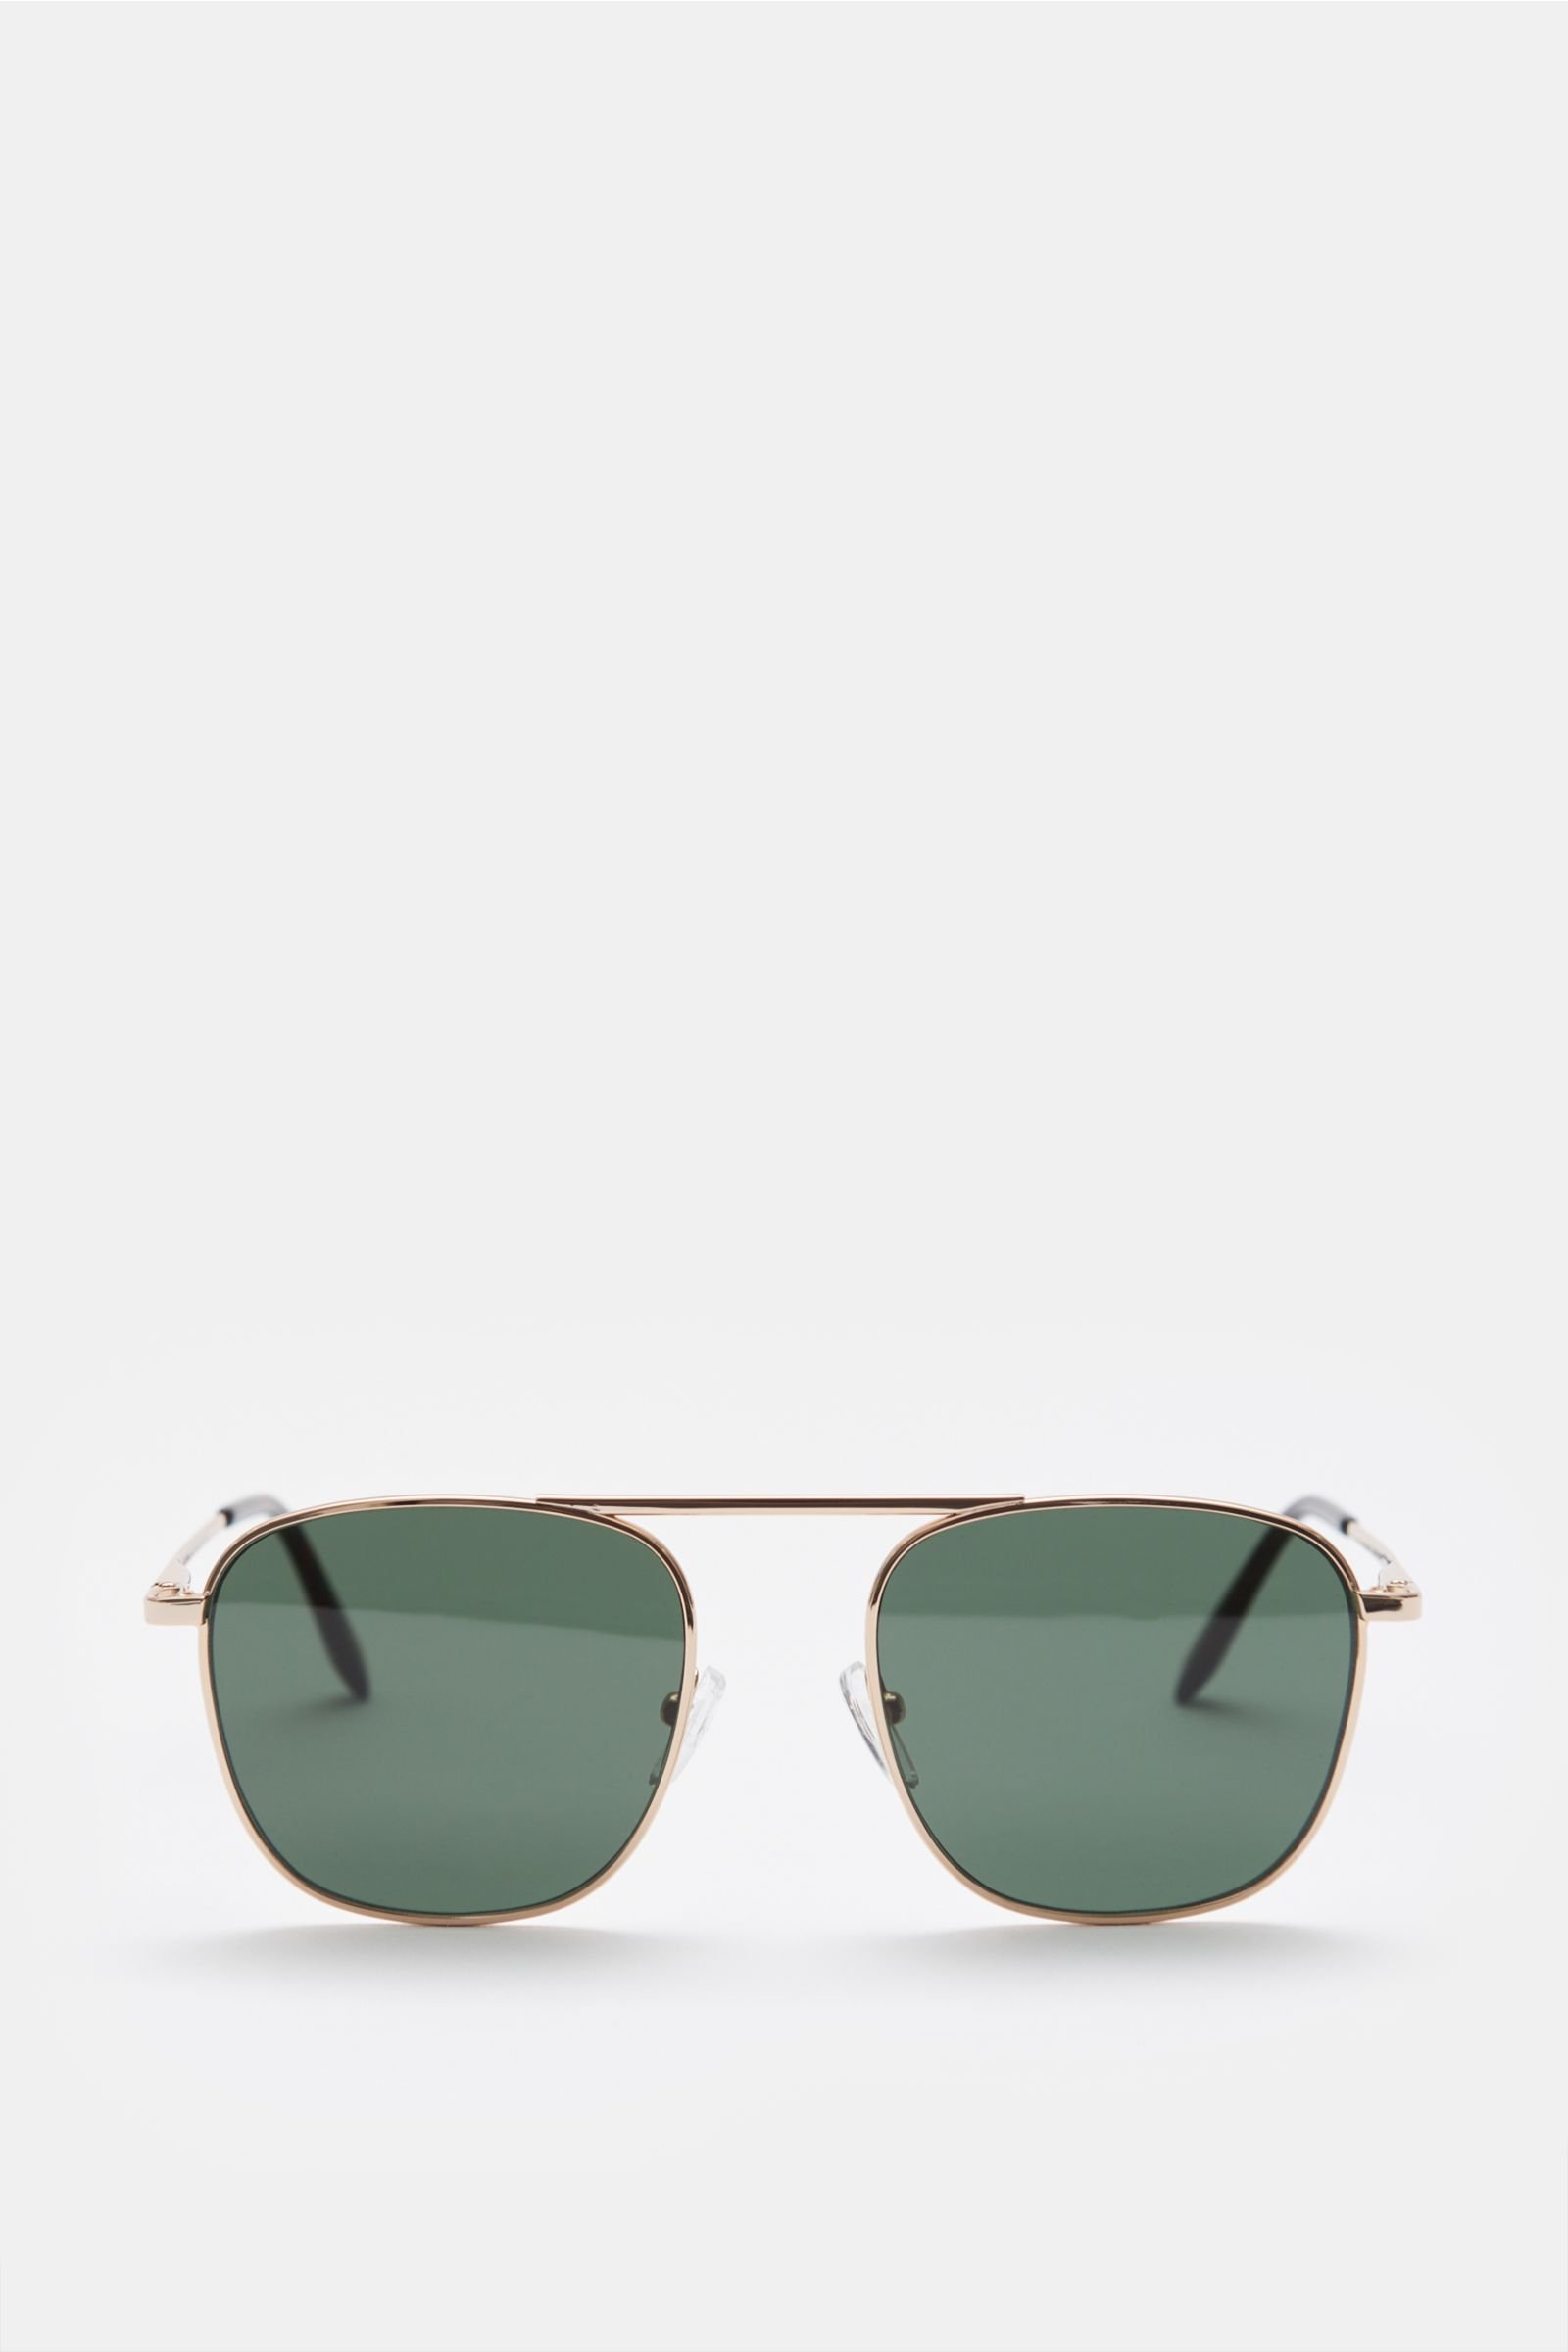 Sunglasses silver/dark green